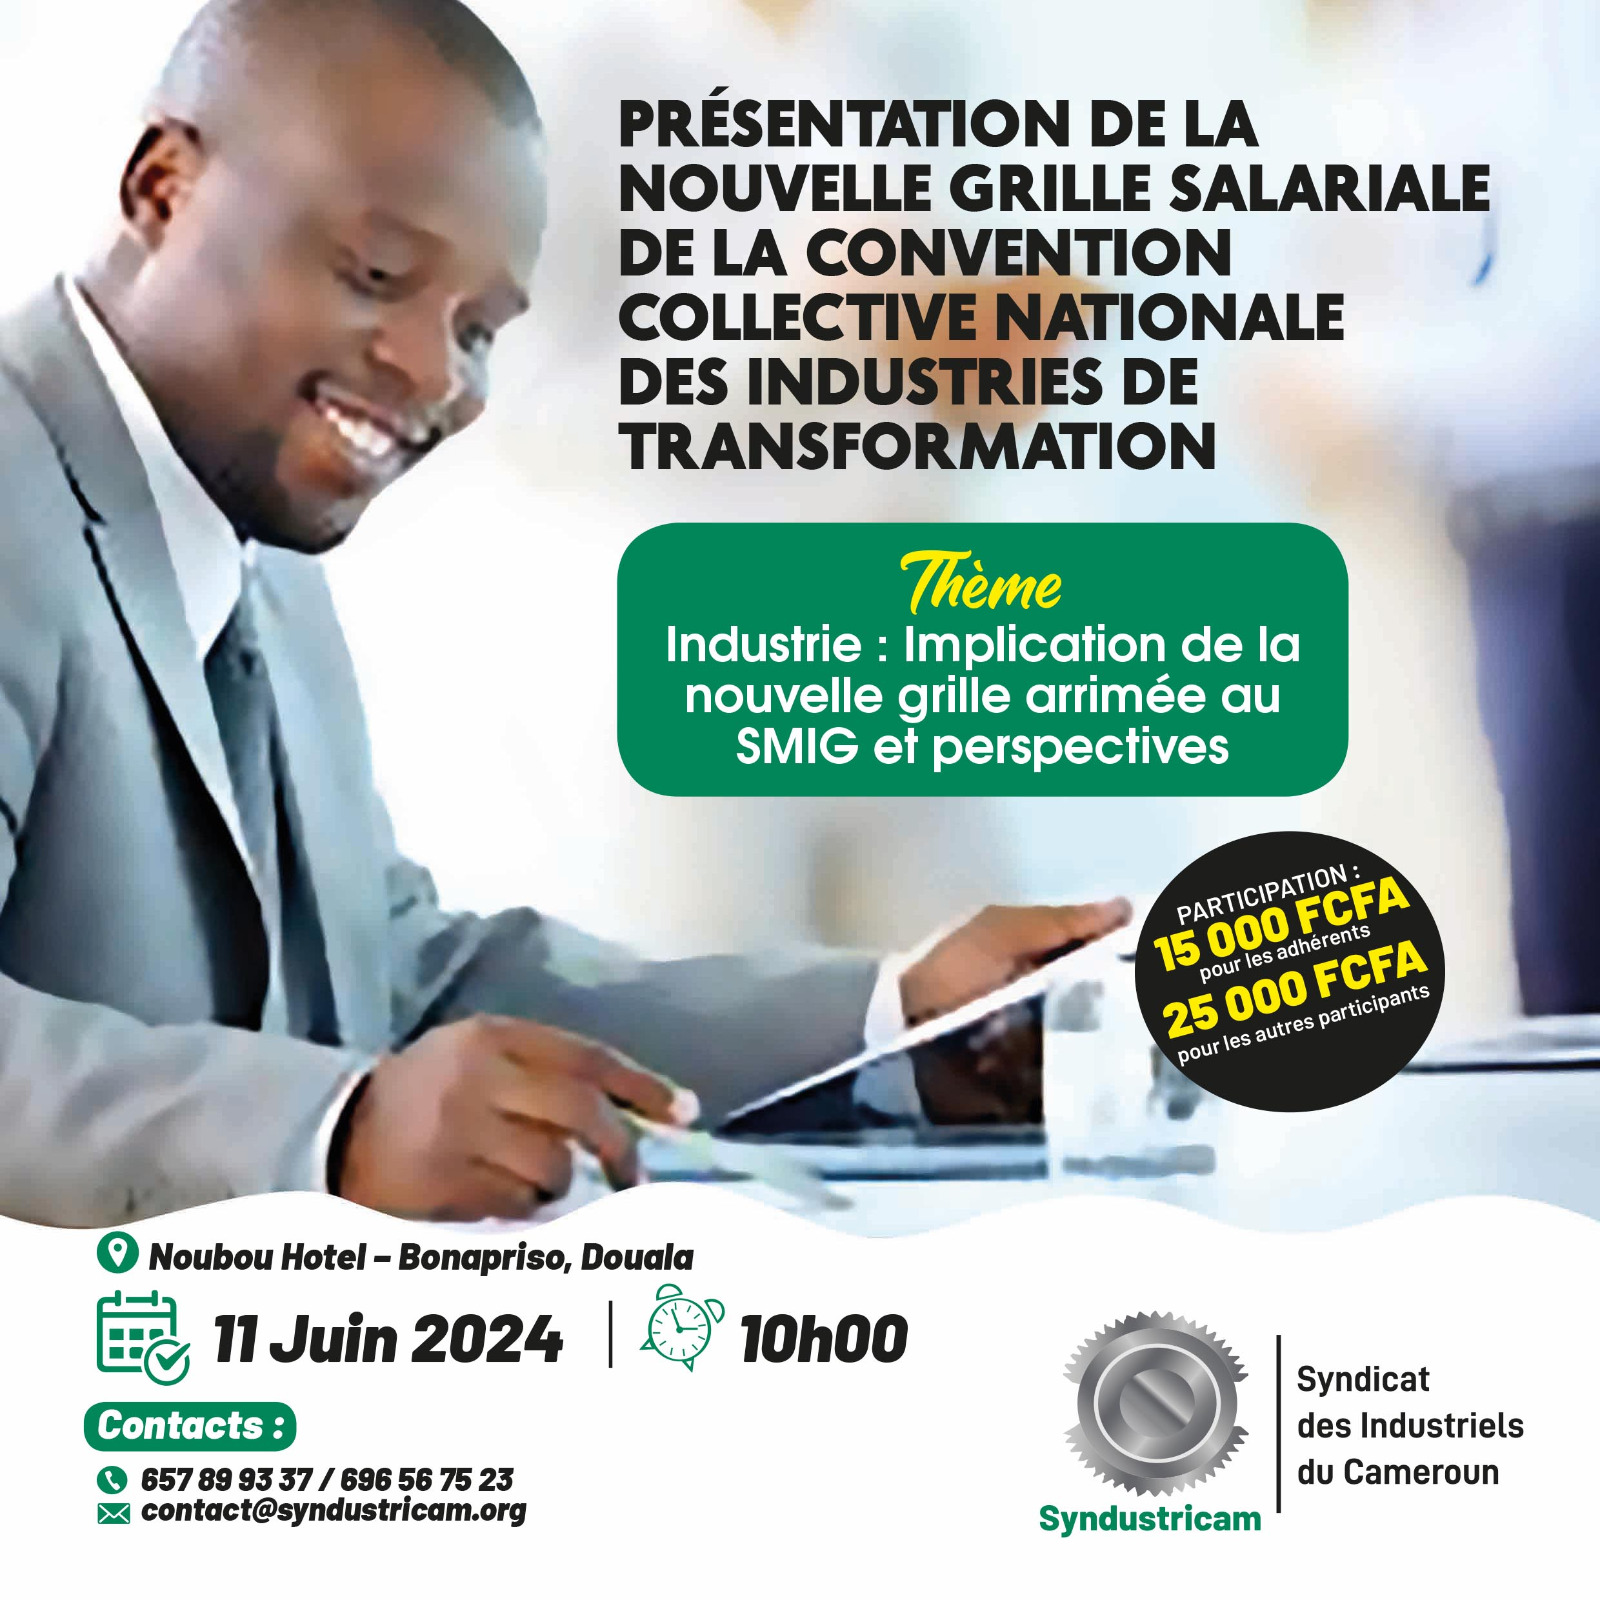 11 Juin 2024 : Cérémonie de présentation et d’échanges de la nouvelle grille salariale des industries de transformation arrimée au SMIG dès 10H00 au NOUBOU Hotel, Bonapriso – Douala.